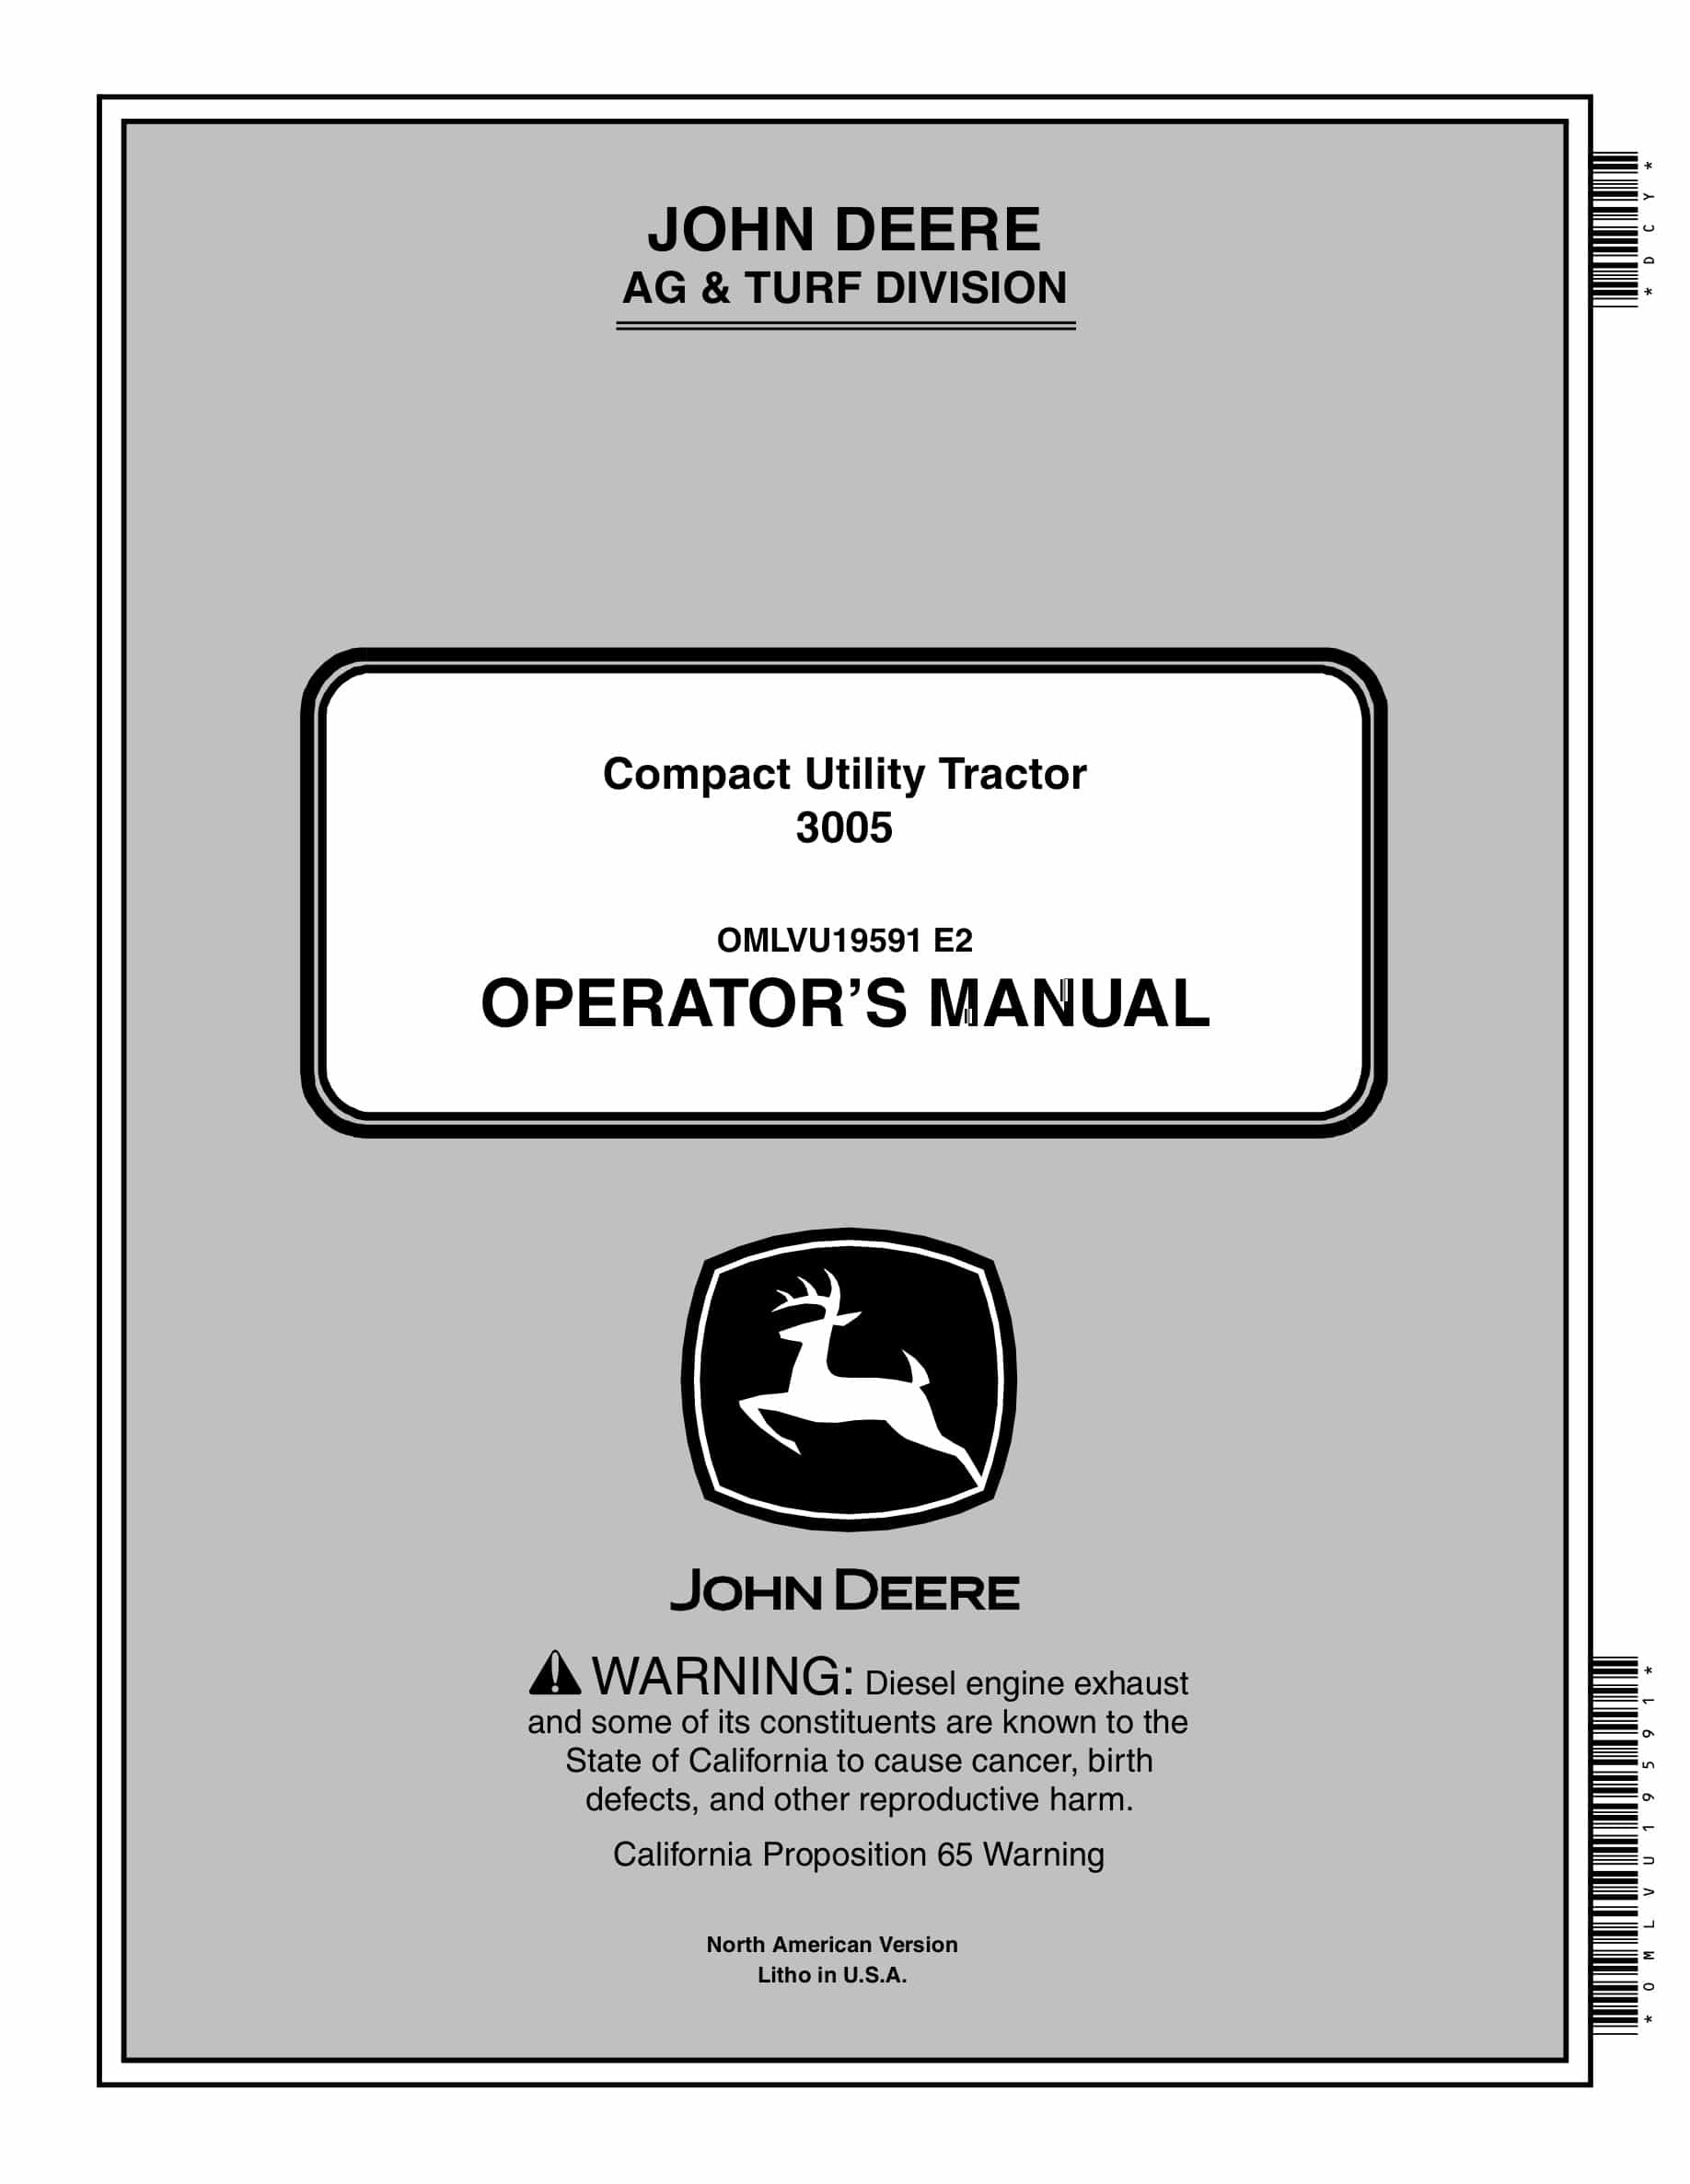 John Deere 3005 Tractor Operator Manual OMLVU19591-1